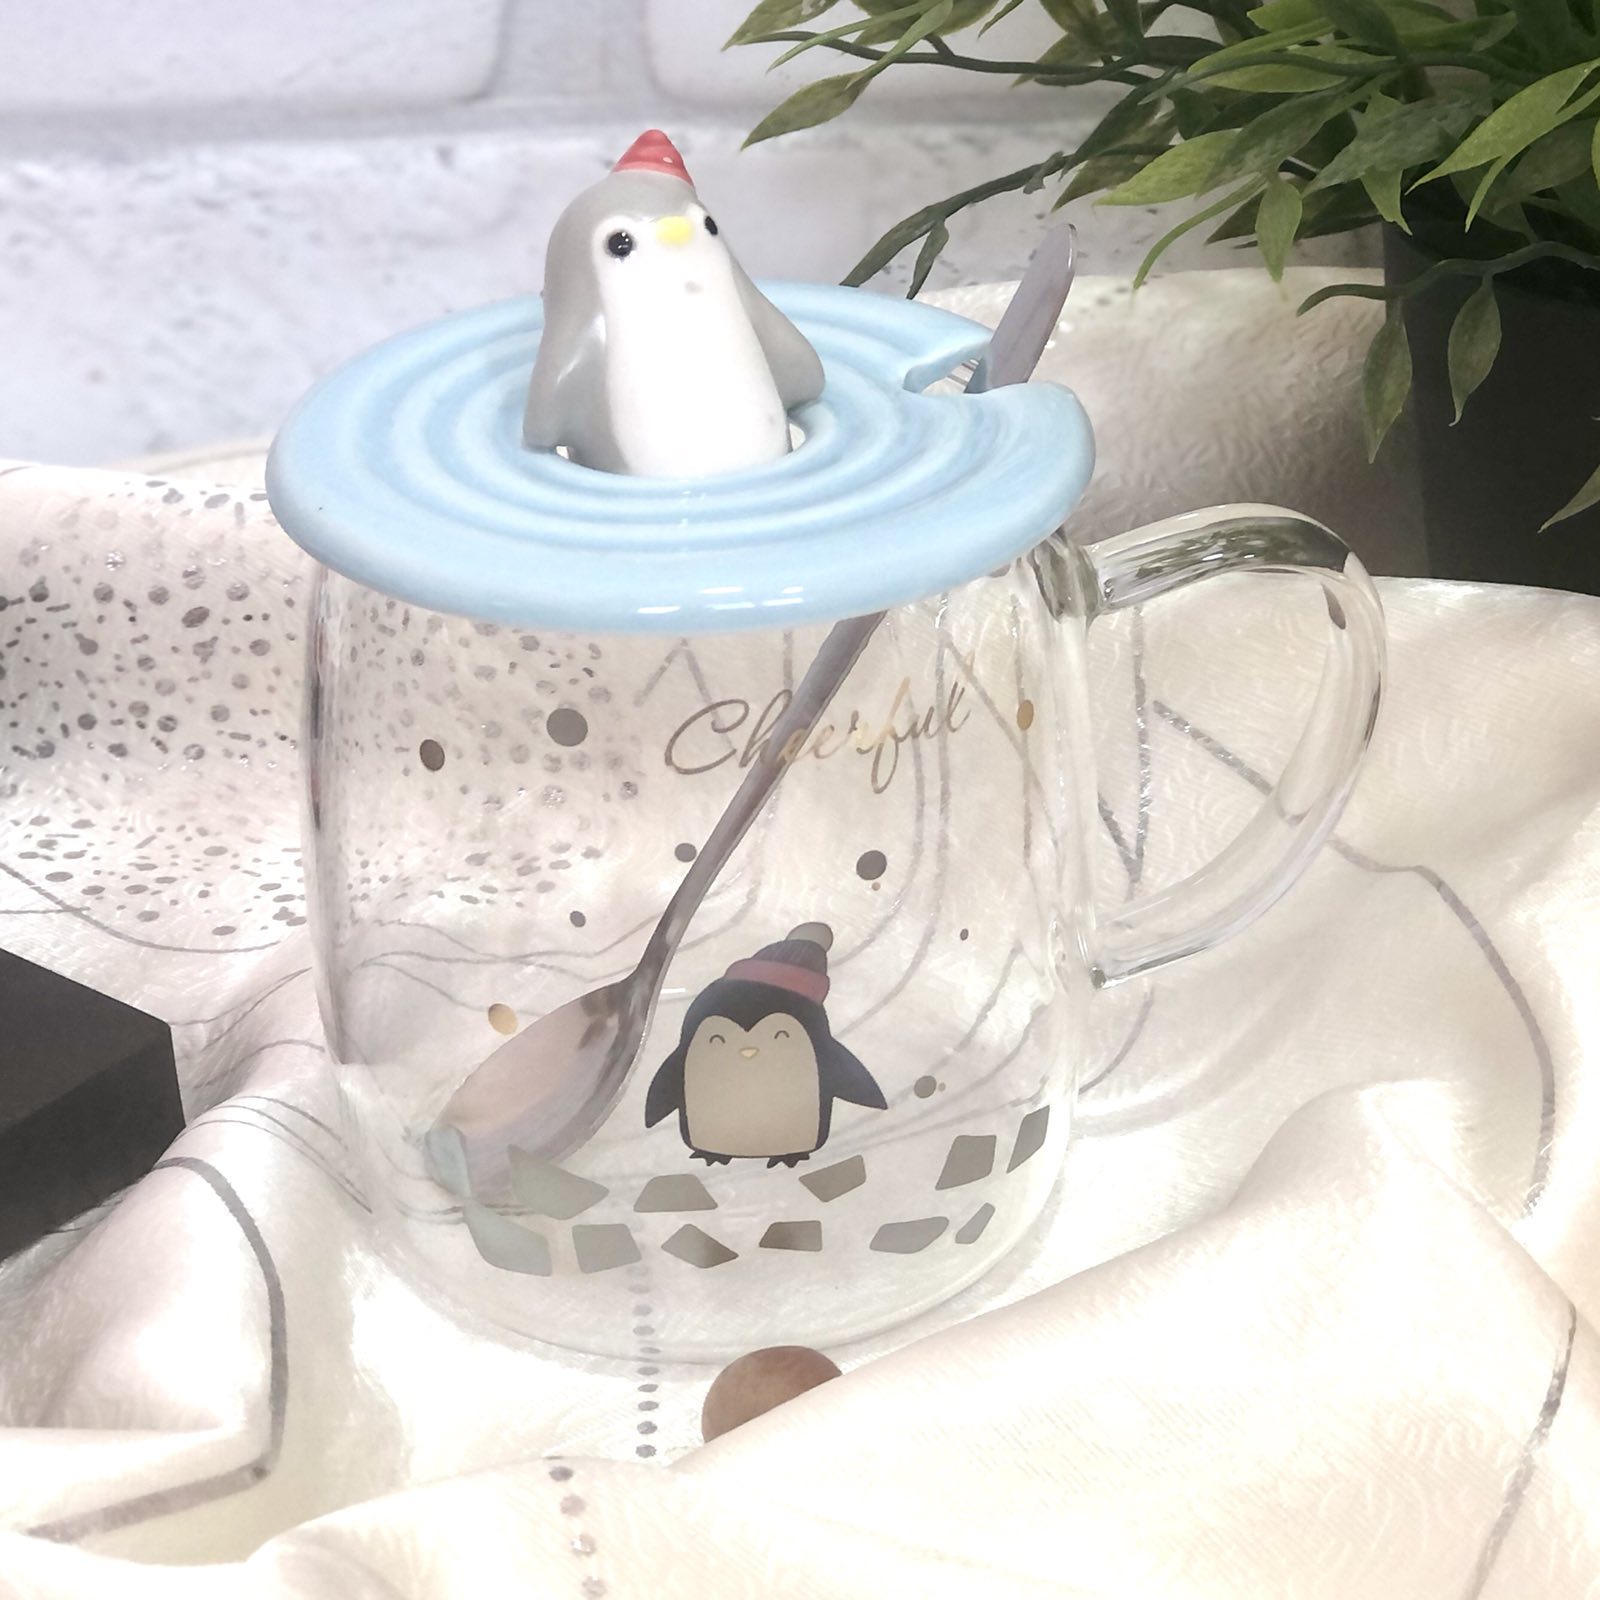 Чашка с крышкой и ложкой 400 мл "Penguin" стекло Stenson - 00527 ✅ базовая цена $5.86 ✔ Опт ✔ Скидки ✔ Заходите! - Интернет-магазин ✅ Фортуна-опт ✅